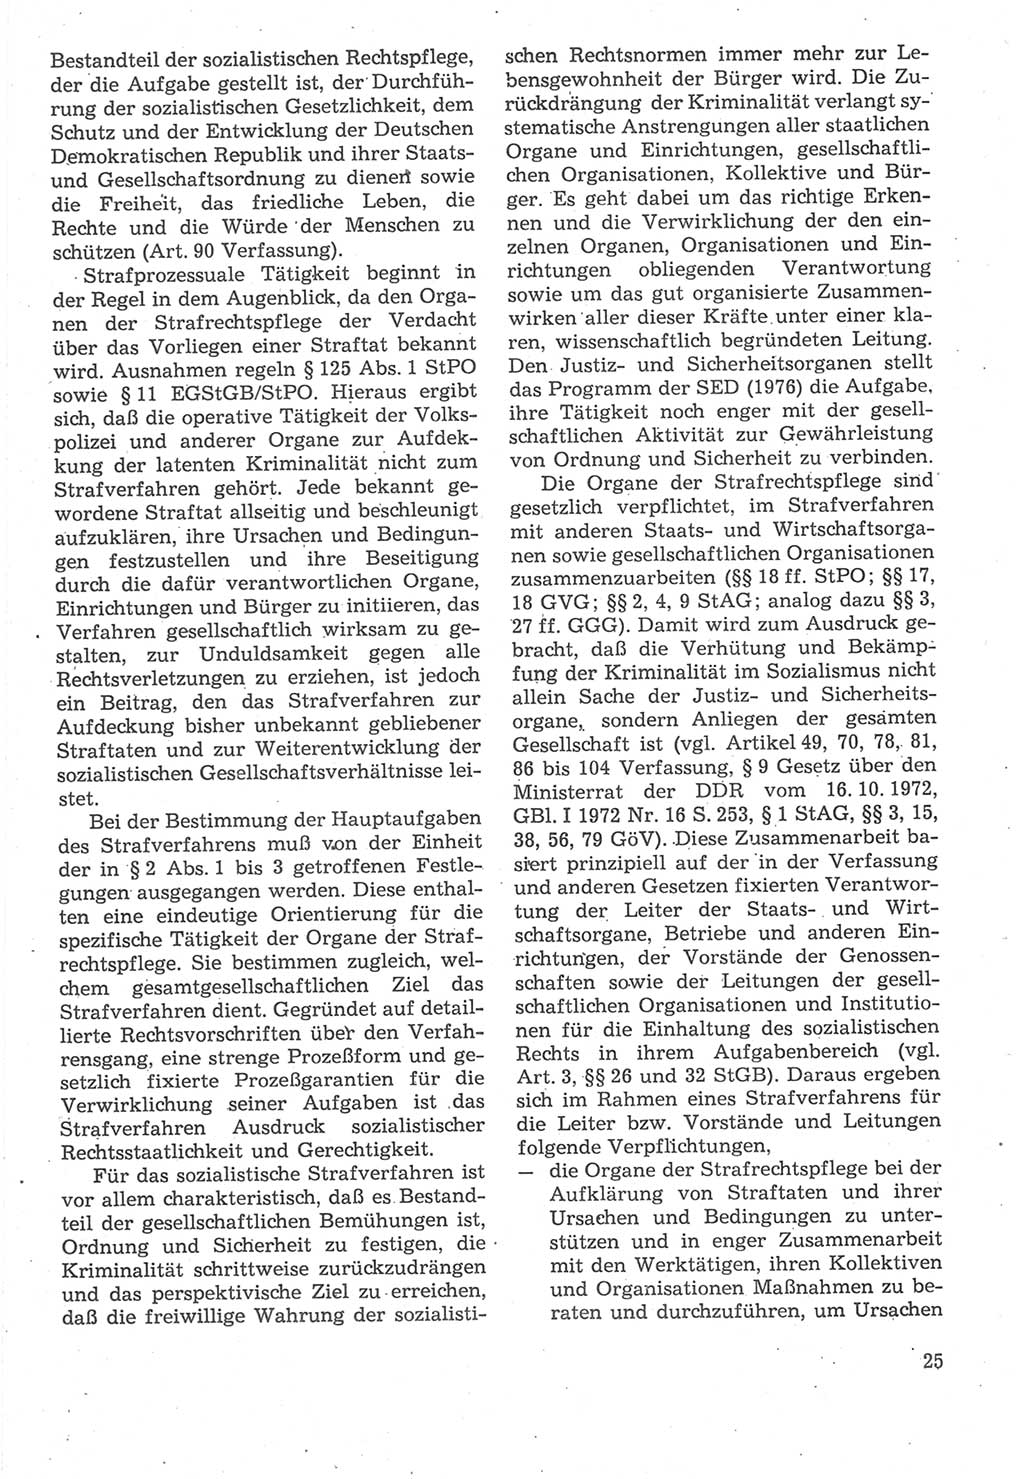 Strafverfahrensrecht [Deutsche Demokratische Republik (DDR)], Lehrbuch 1987, Seite 25 (Strafverf.-R. DDR Lb. 1987, S. 25)